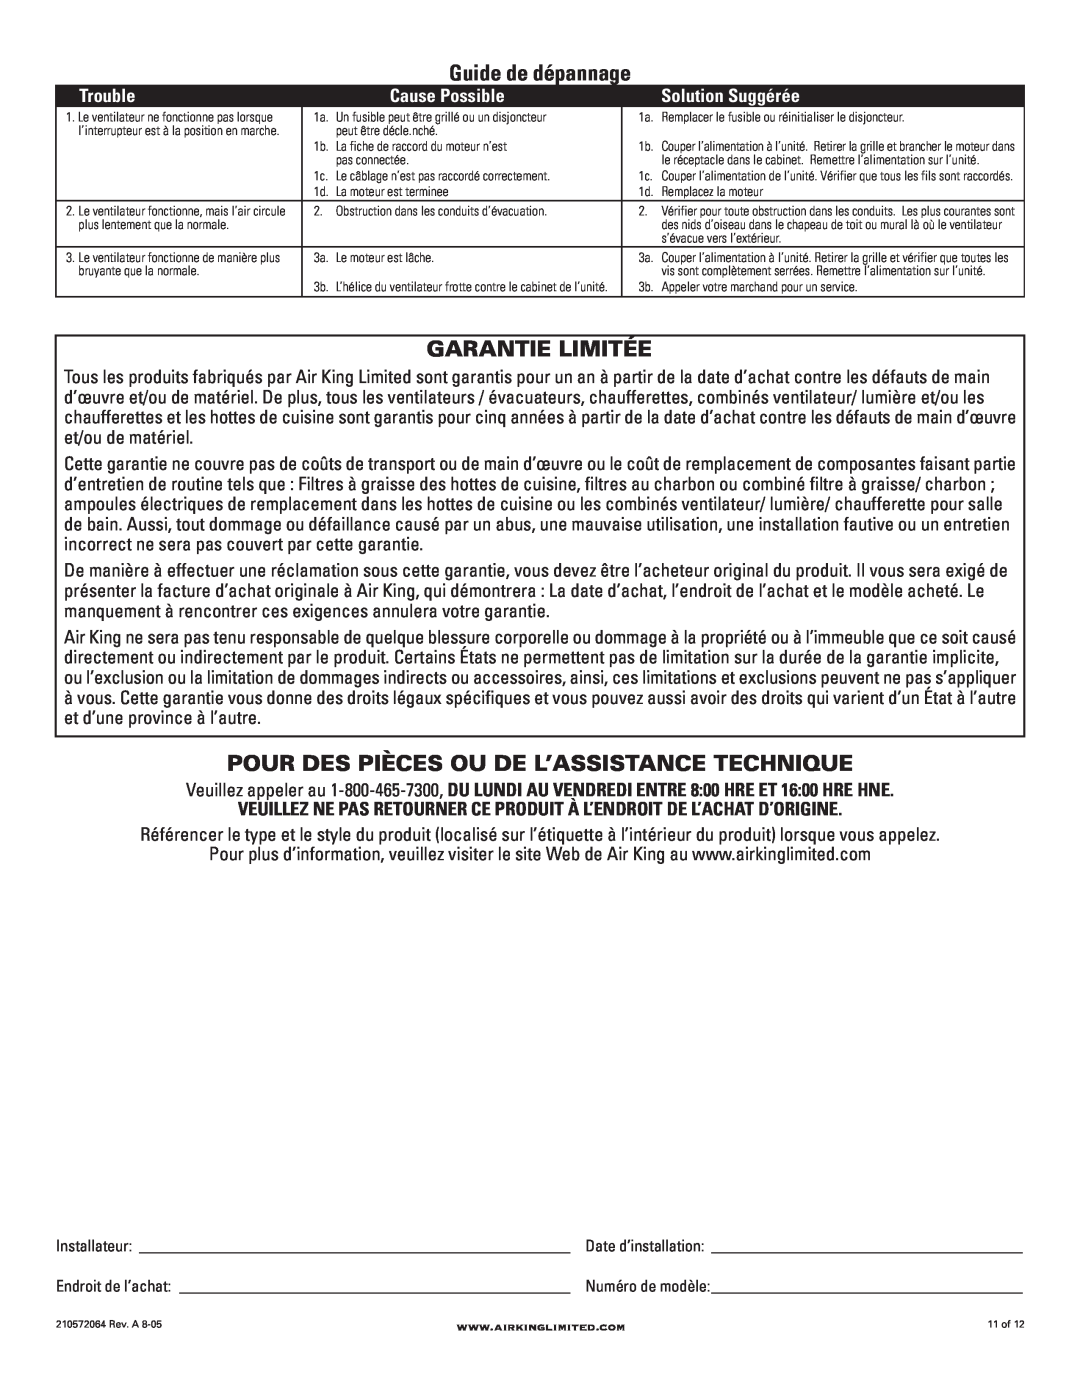 Air King DRLC107 manual Guide de dépannage, Garantie Limitée, Pour Des Pièces Ou De L’Assistance Technique, Trouble 